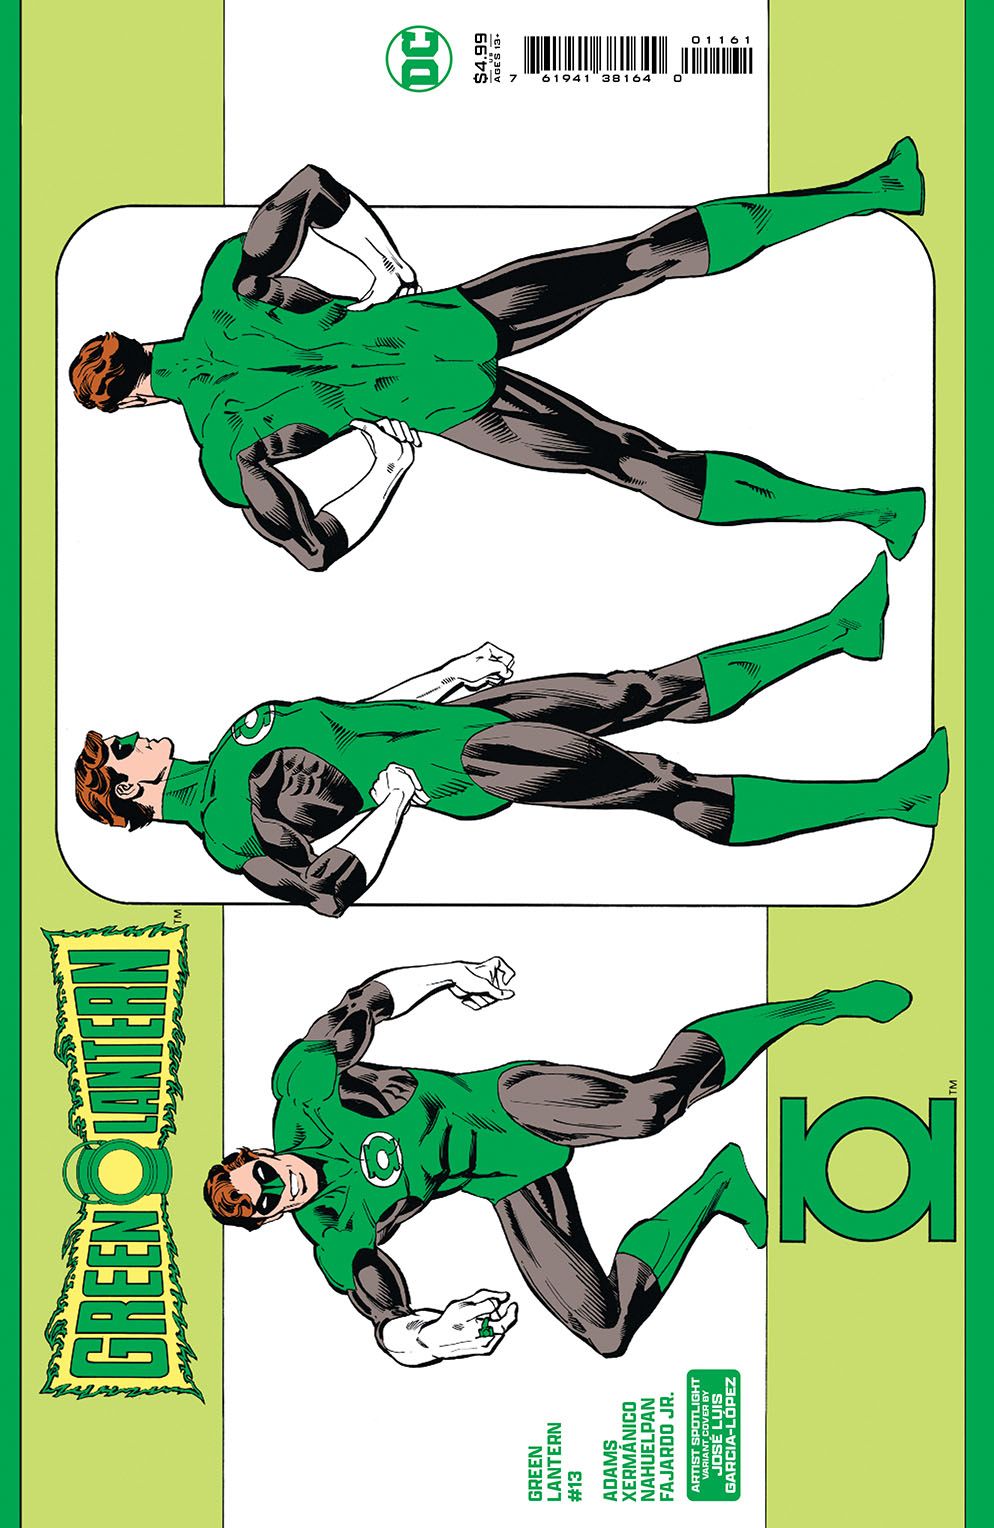 Green Lantern 13 artist spotlight variant